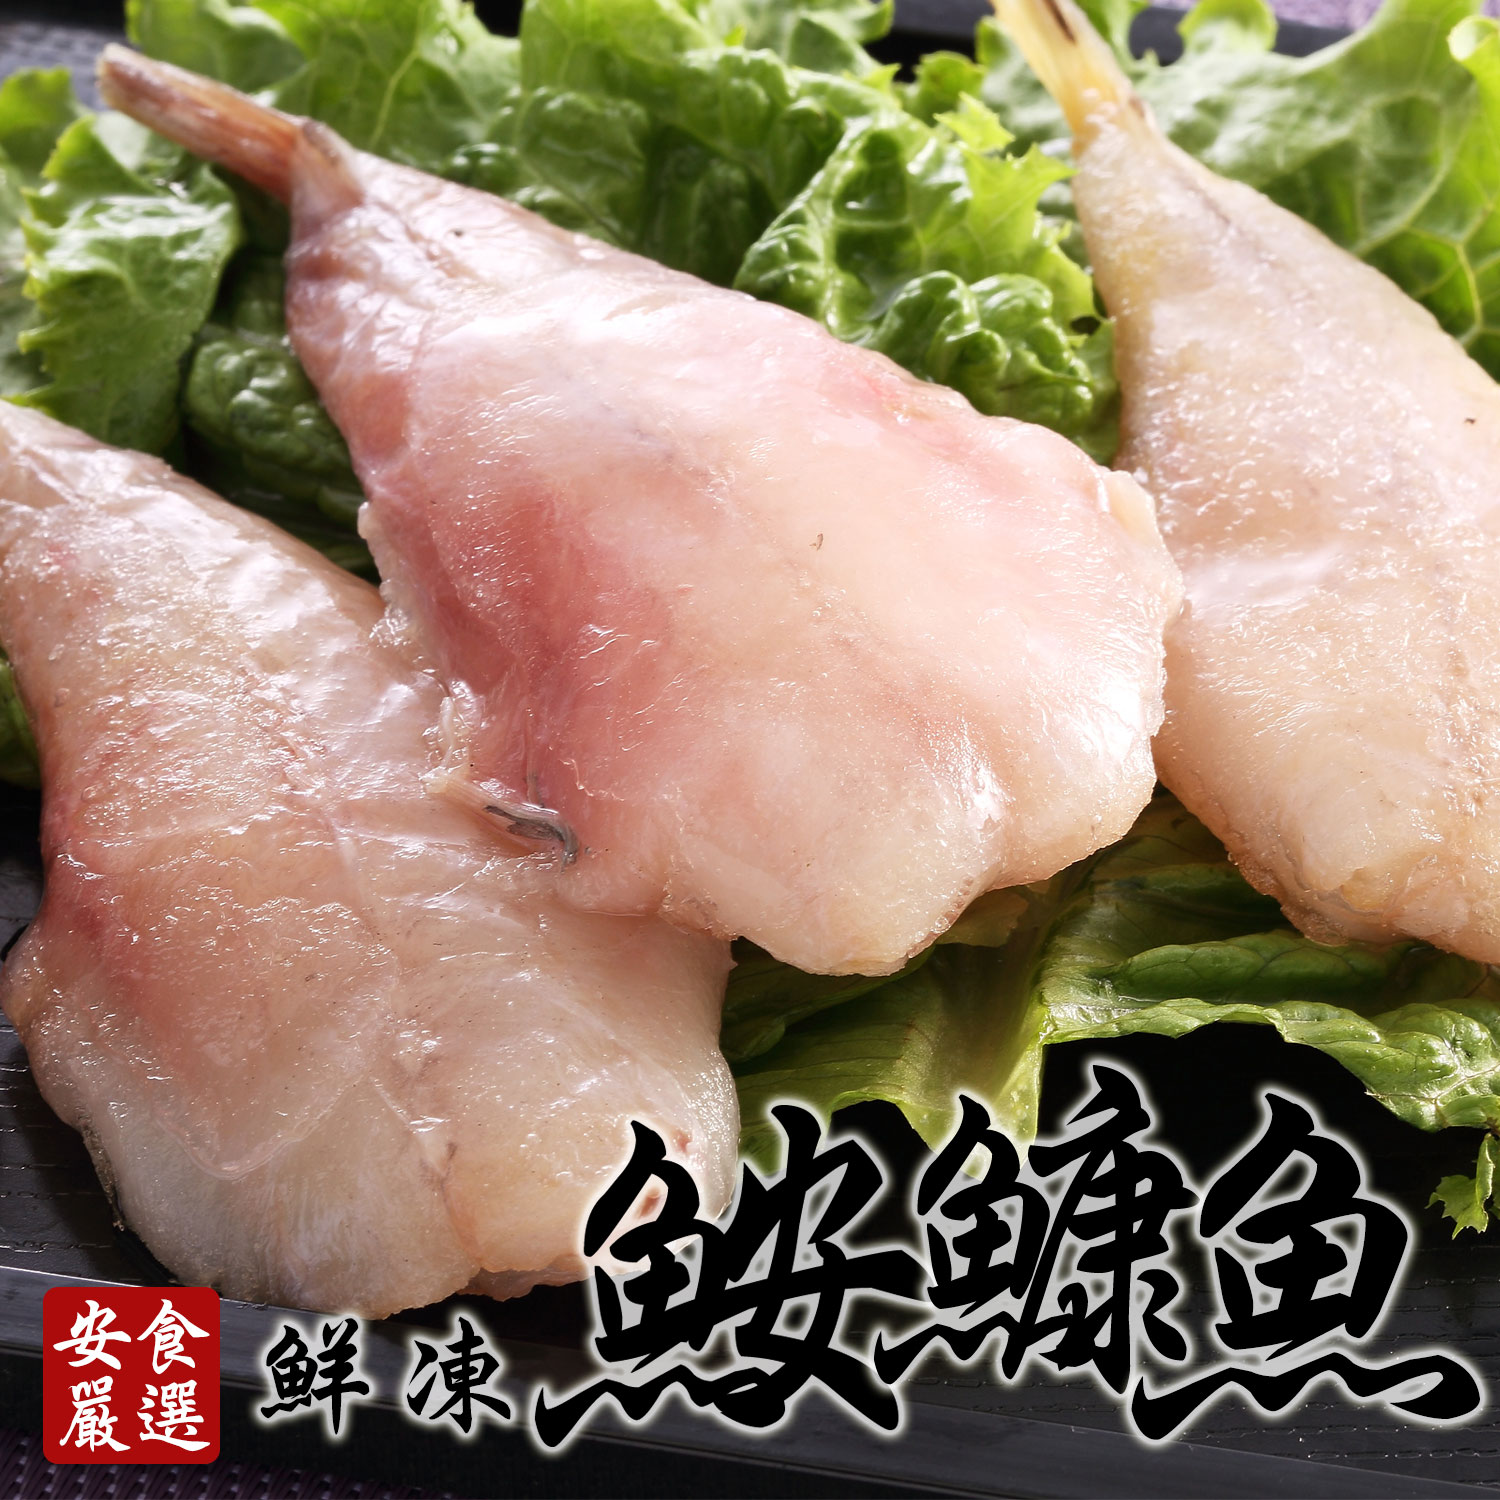 安食嚴選 鮮凍鮟鱇魚(海雞腿)480g/包(BOBC0010)